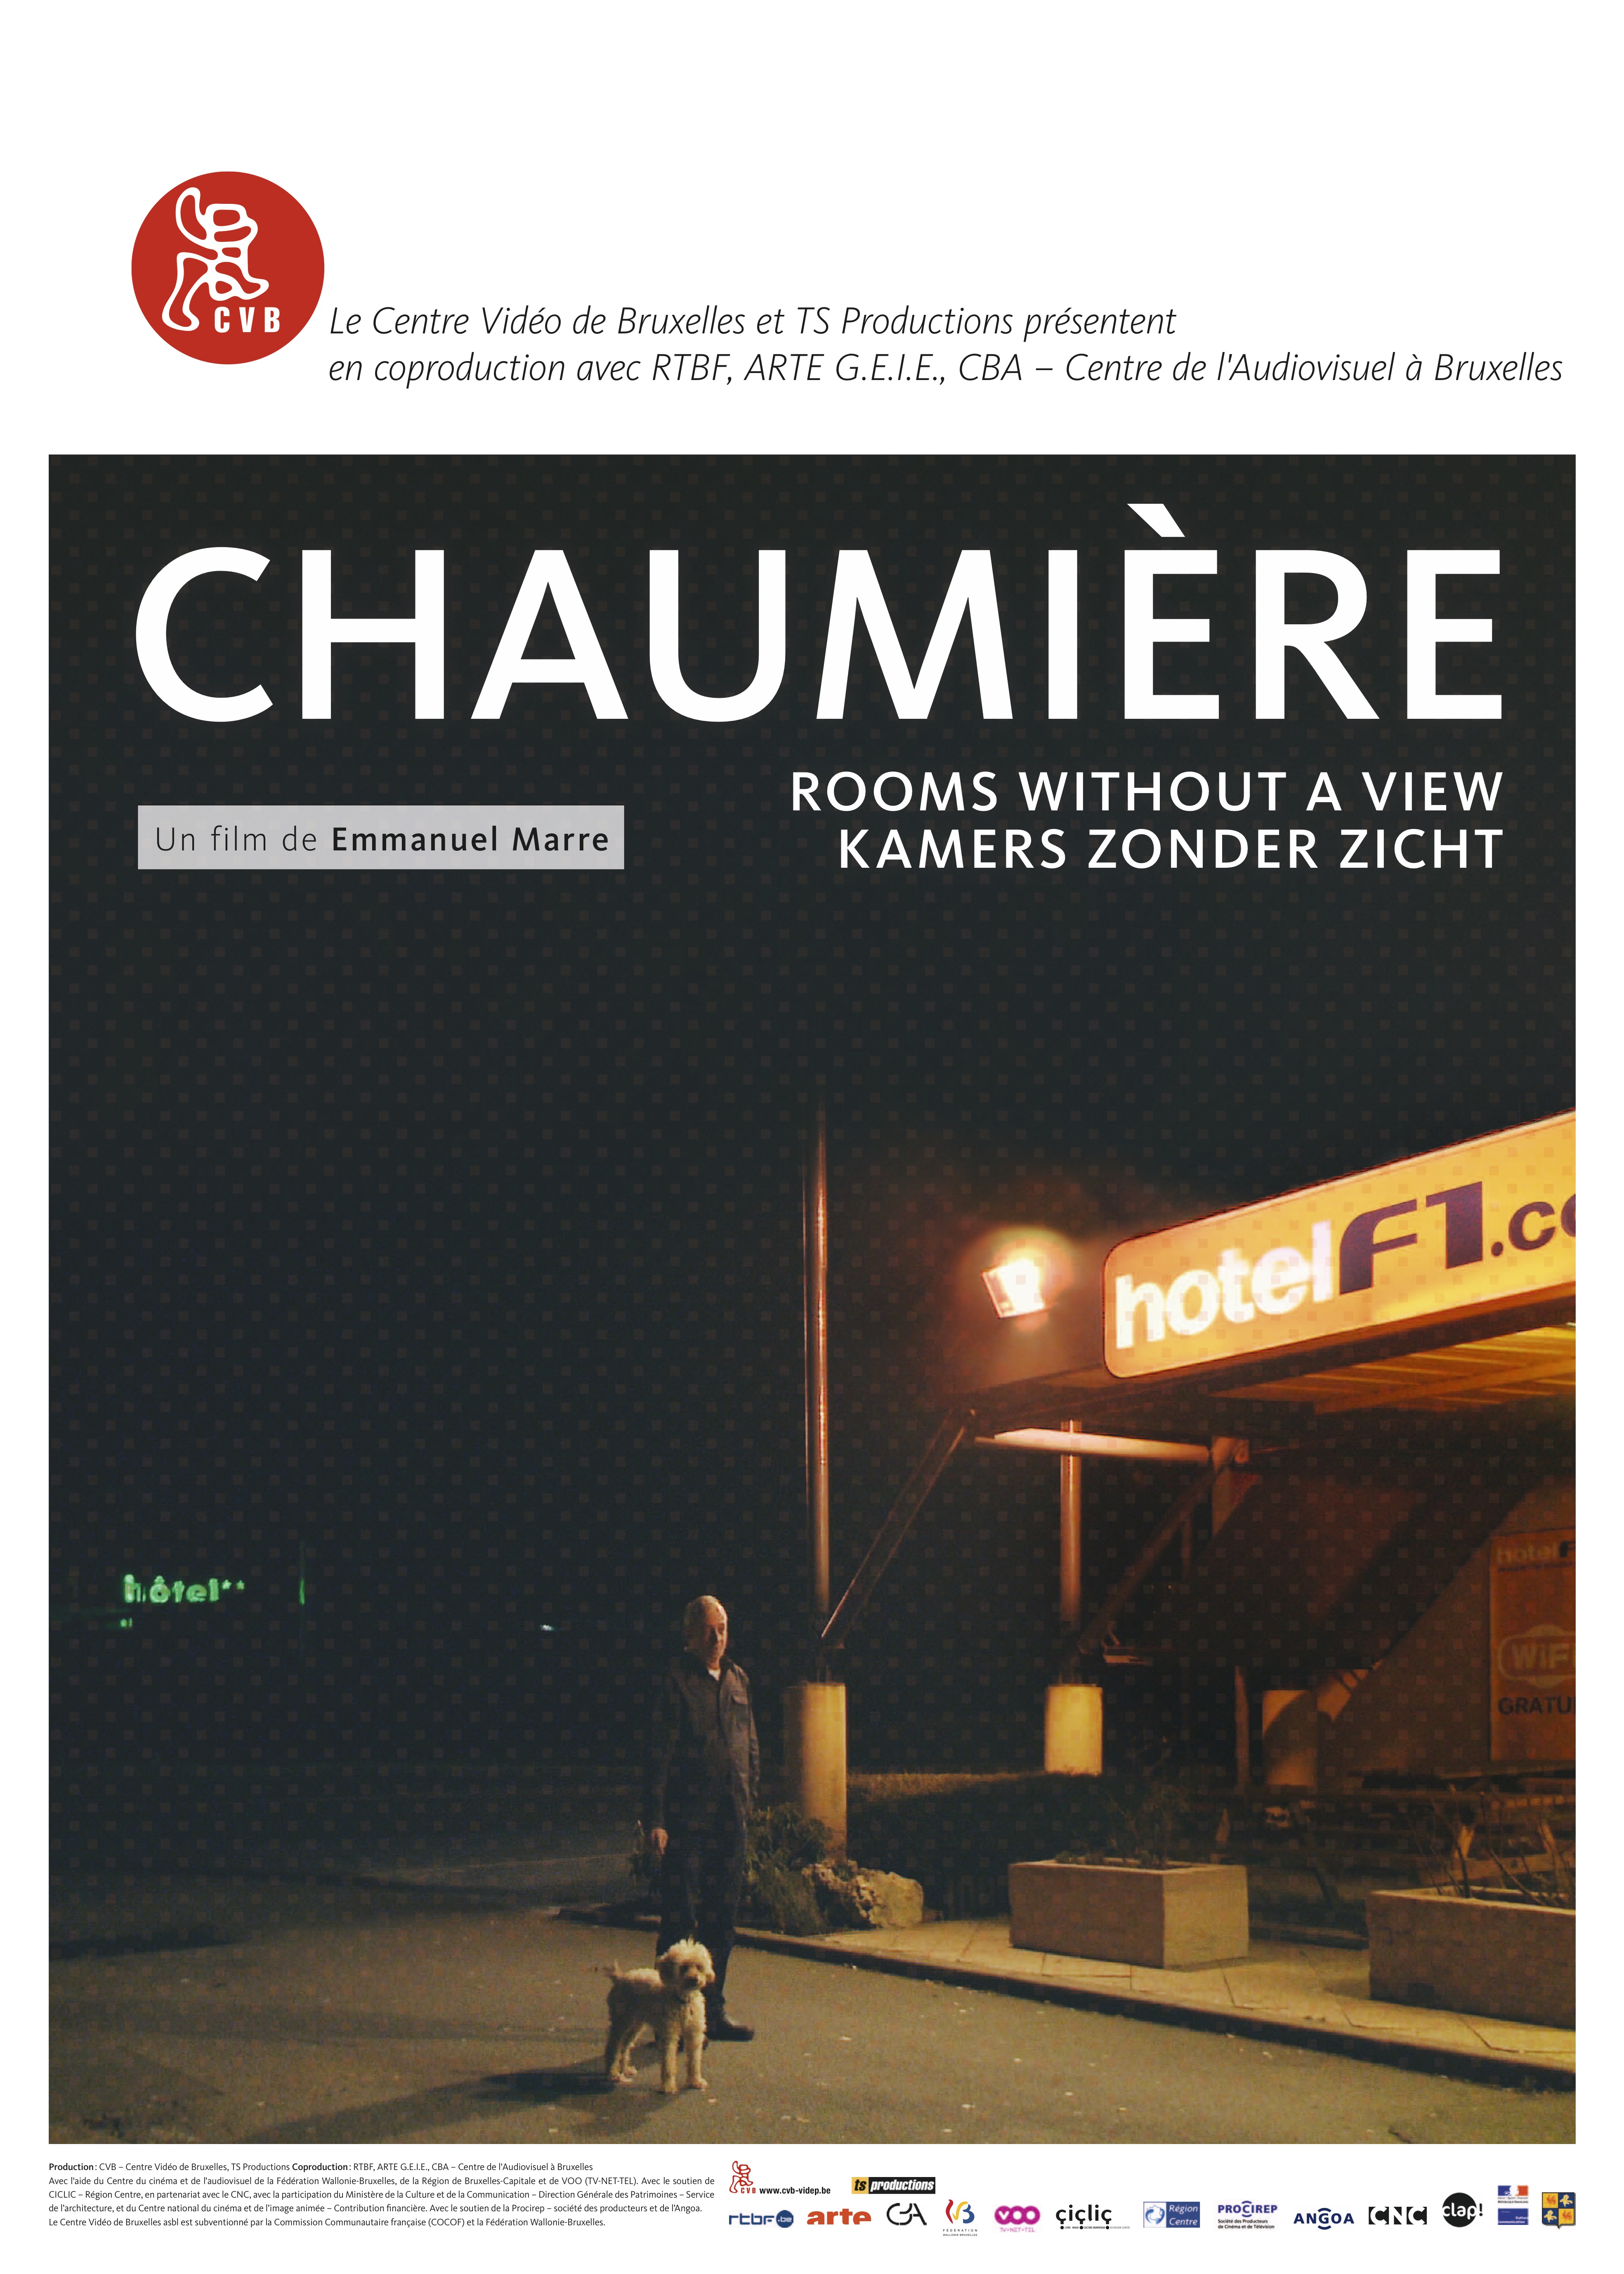 CHAUMIÈRE - Emmanuel Marre